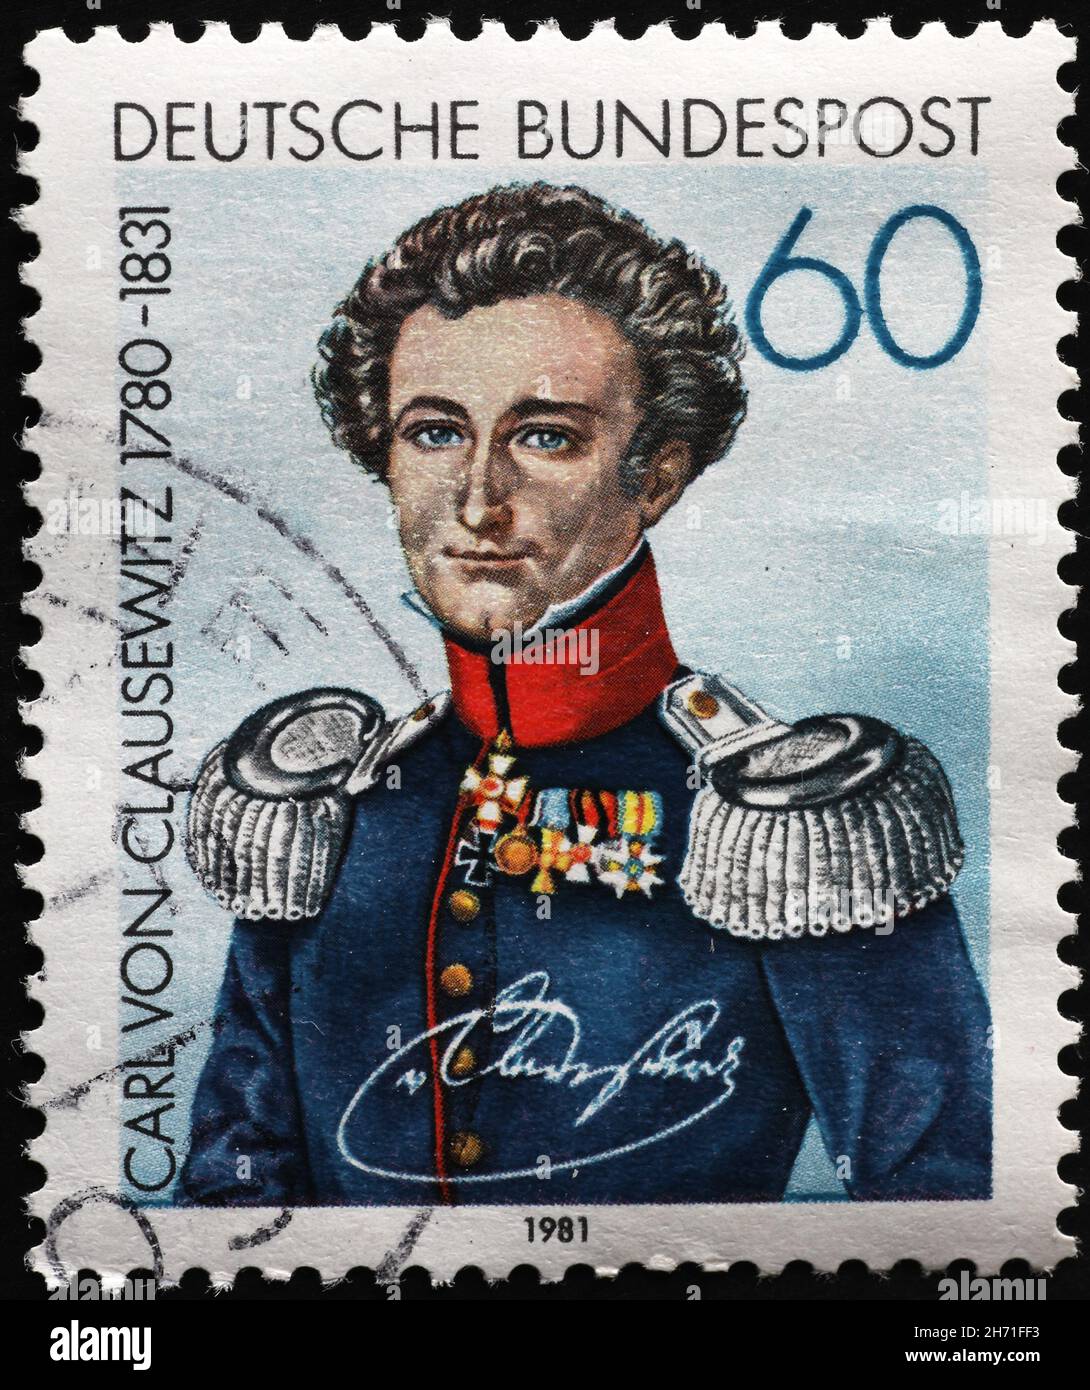 Carl von Clausewitz portrait on german postage stamp Stock Photo